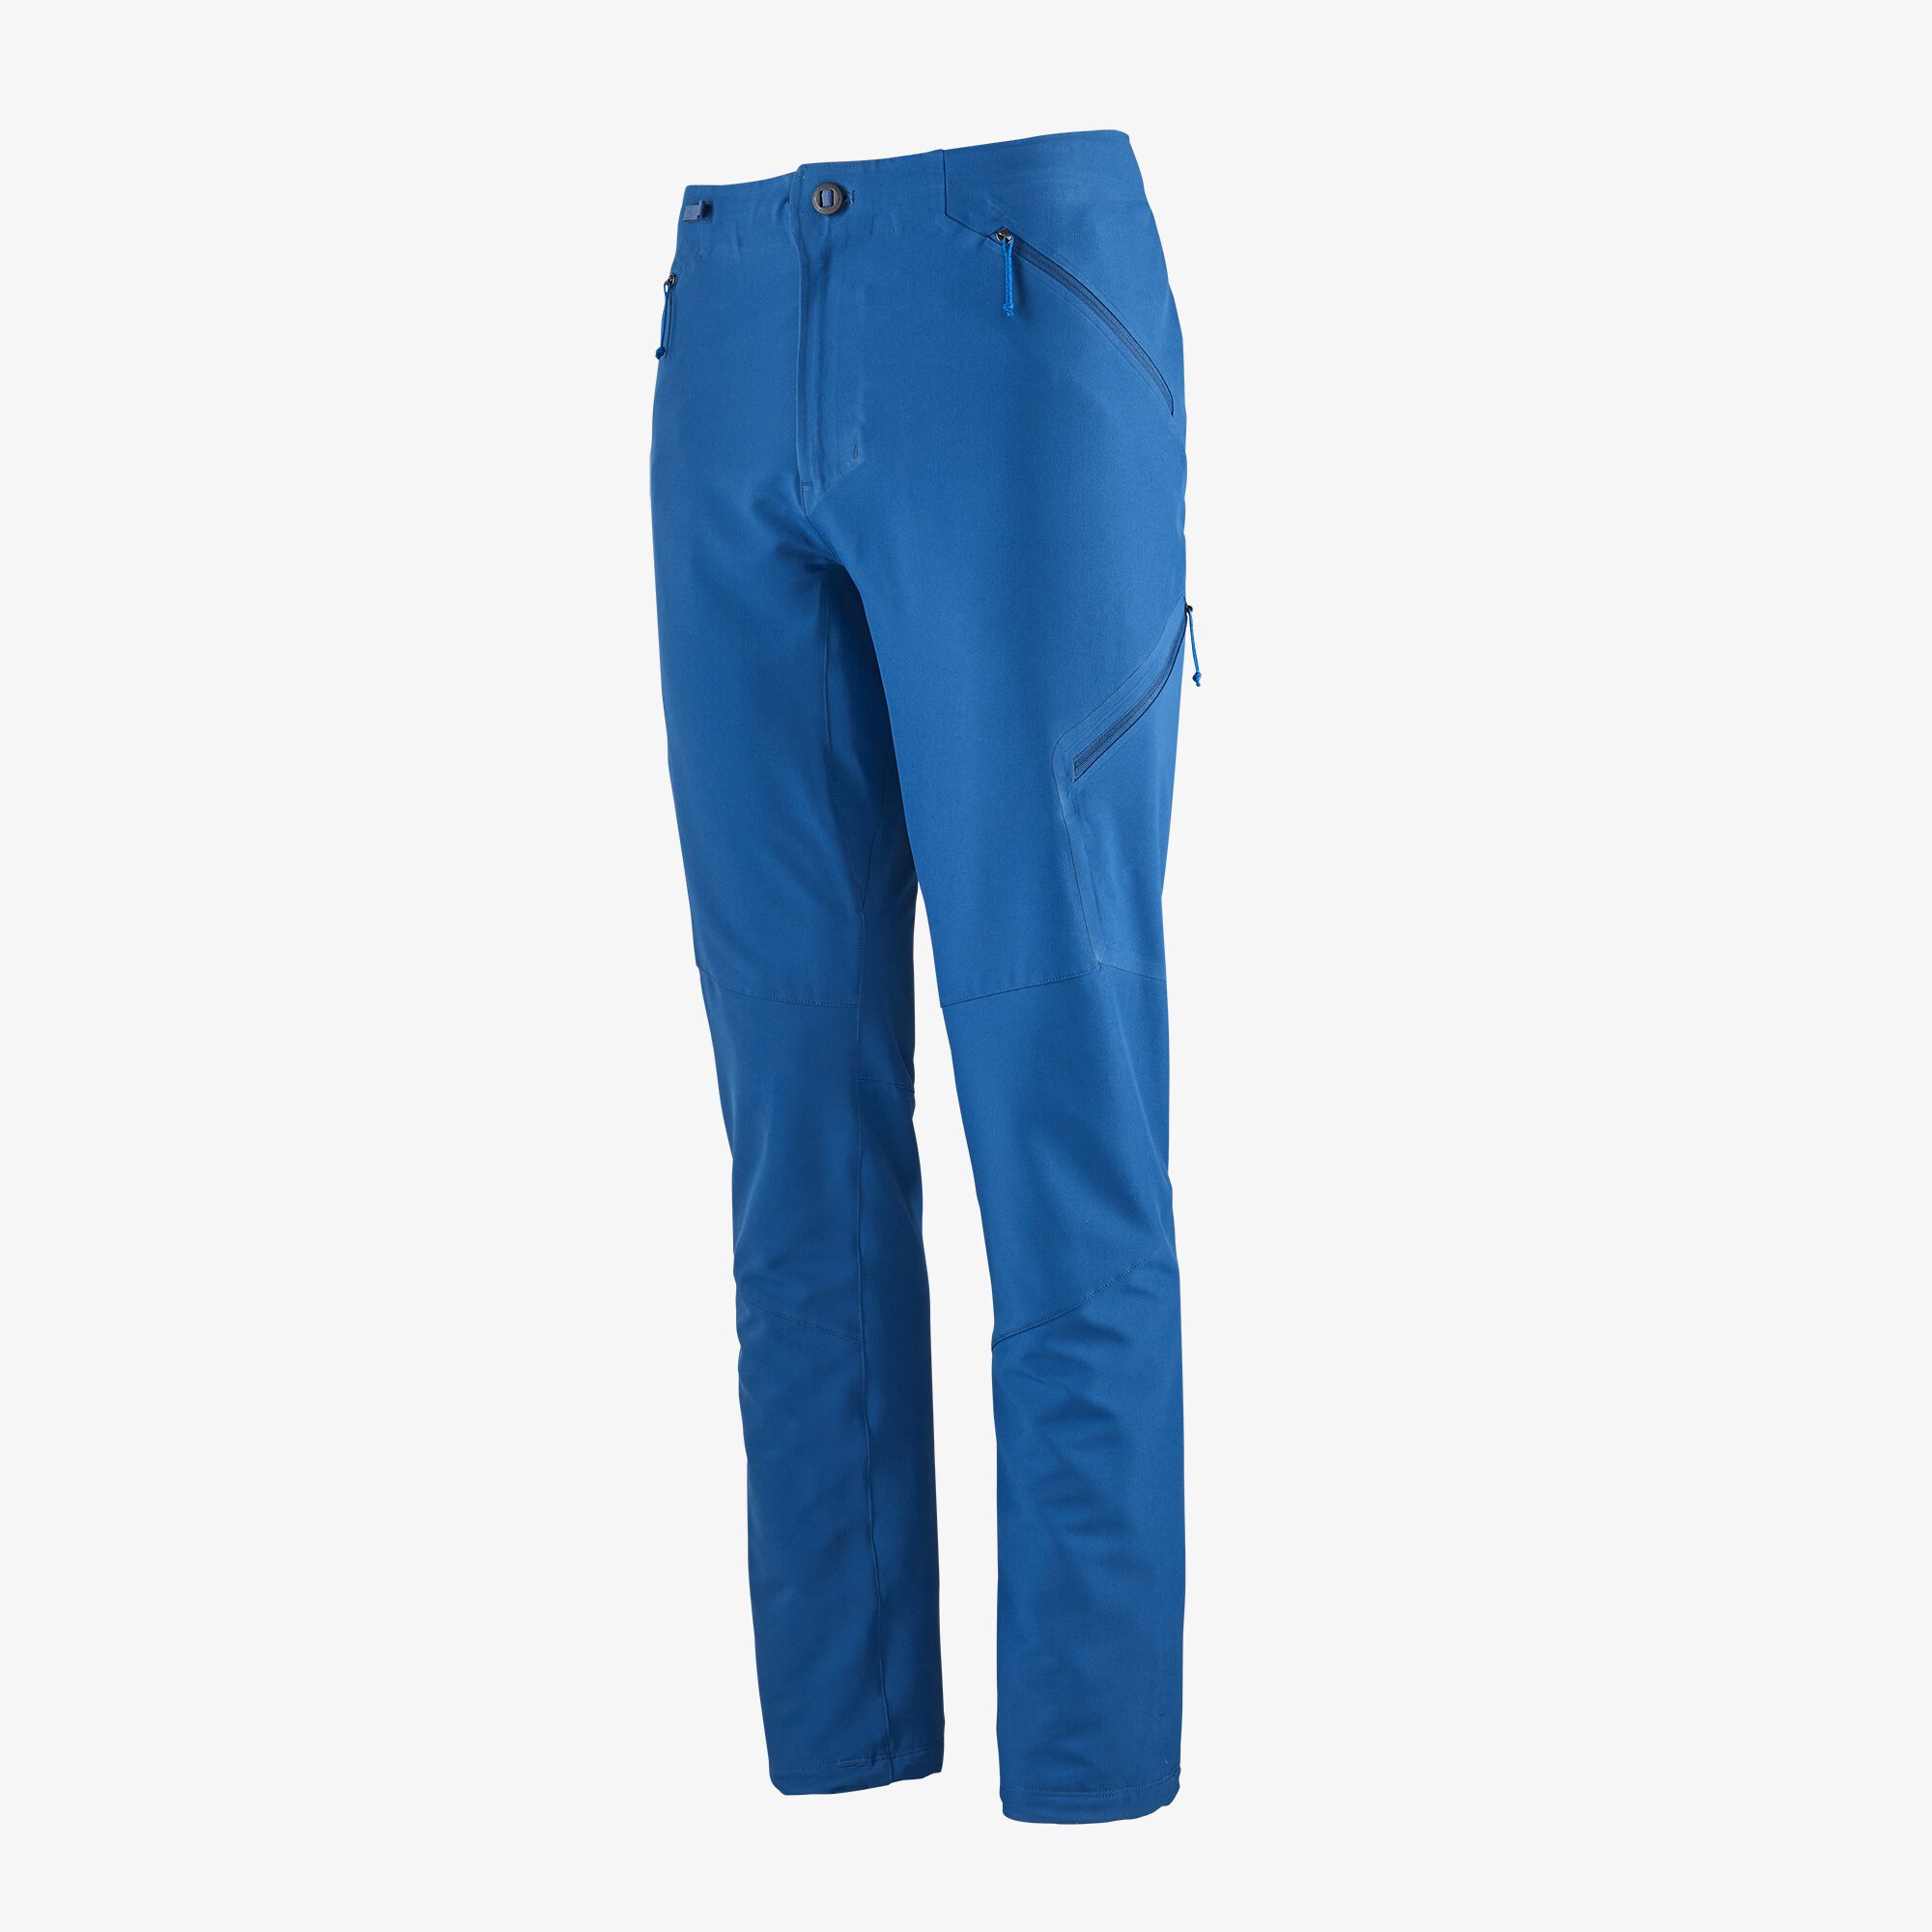 The men's blue hiking pants.